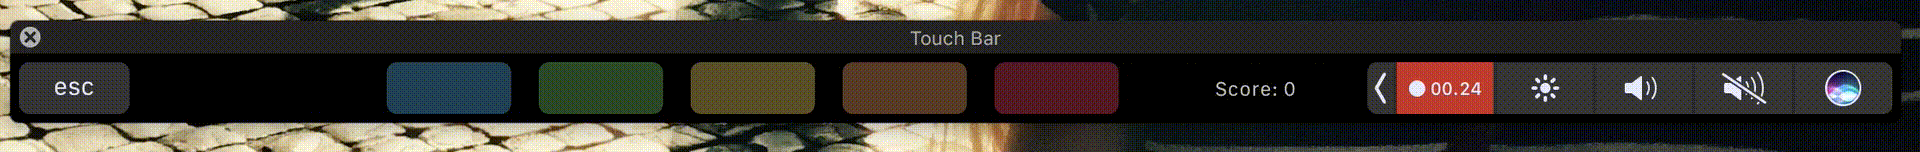 Touch bar